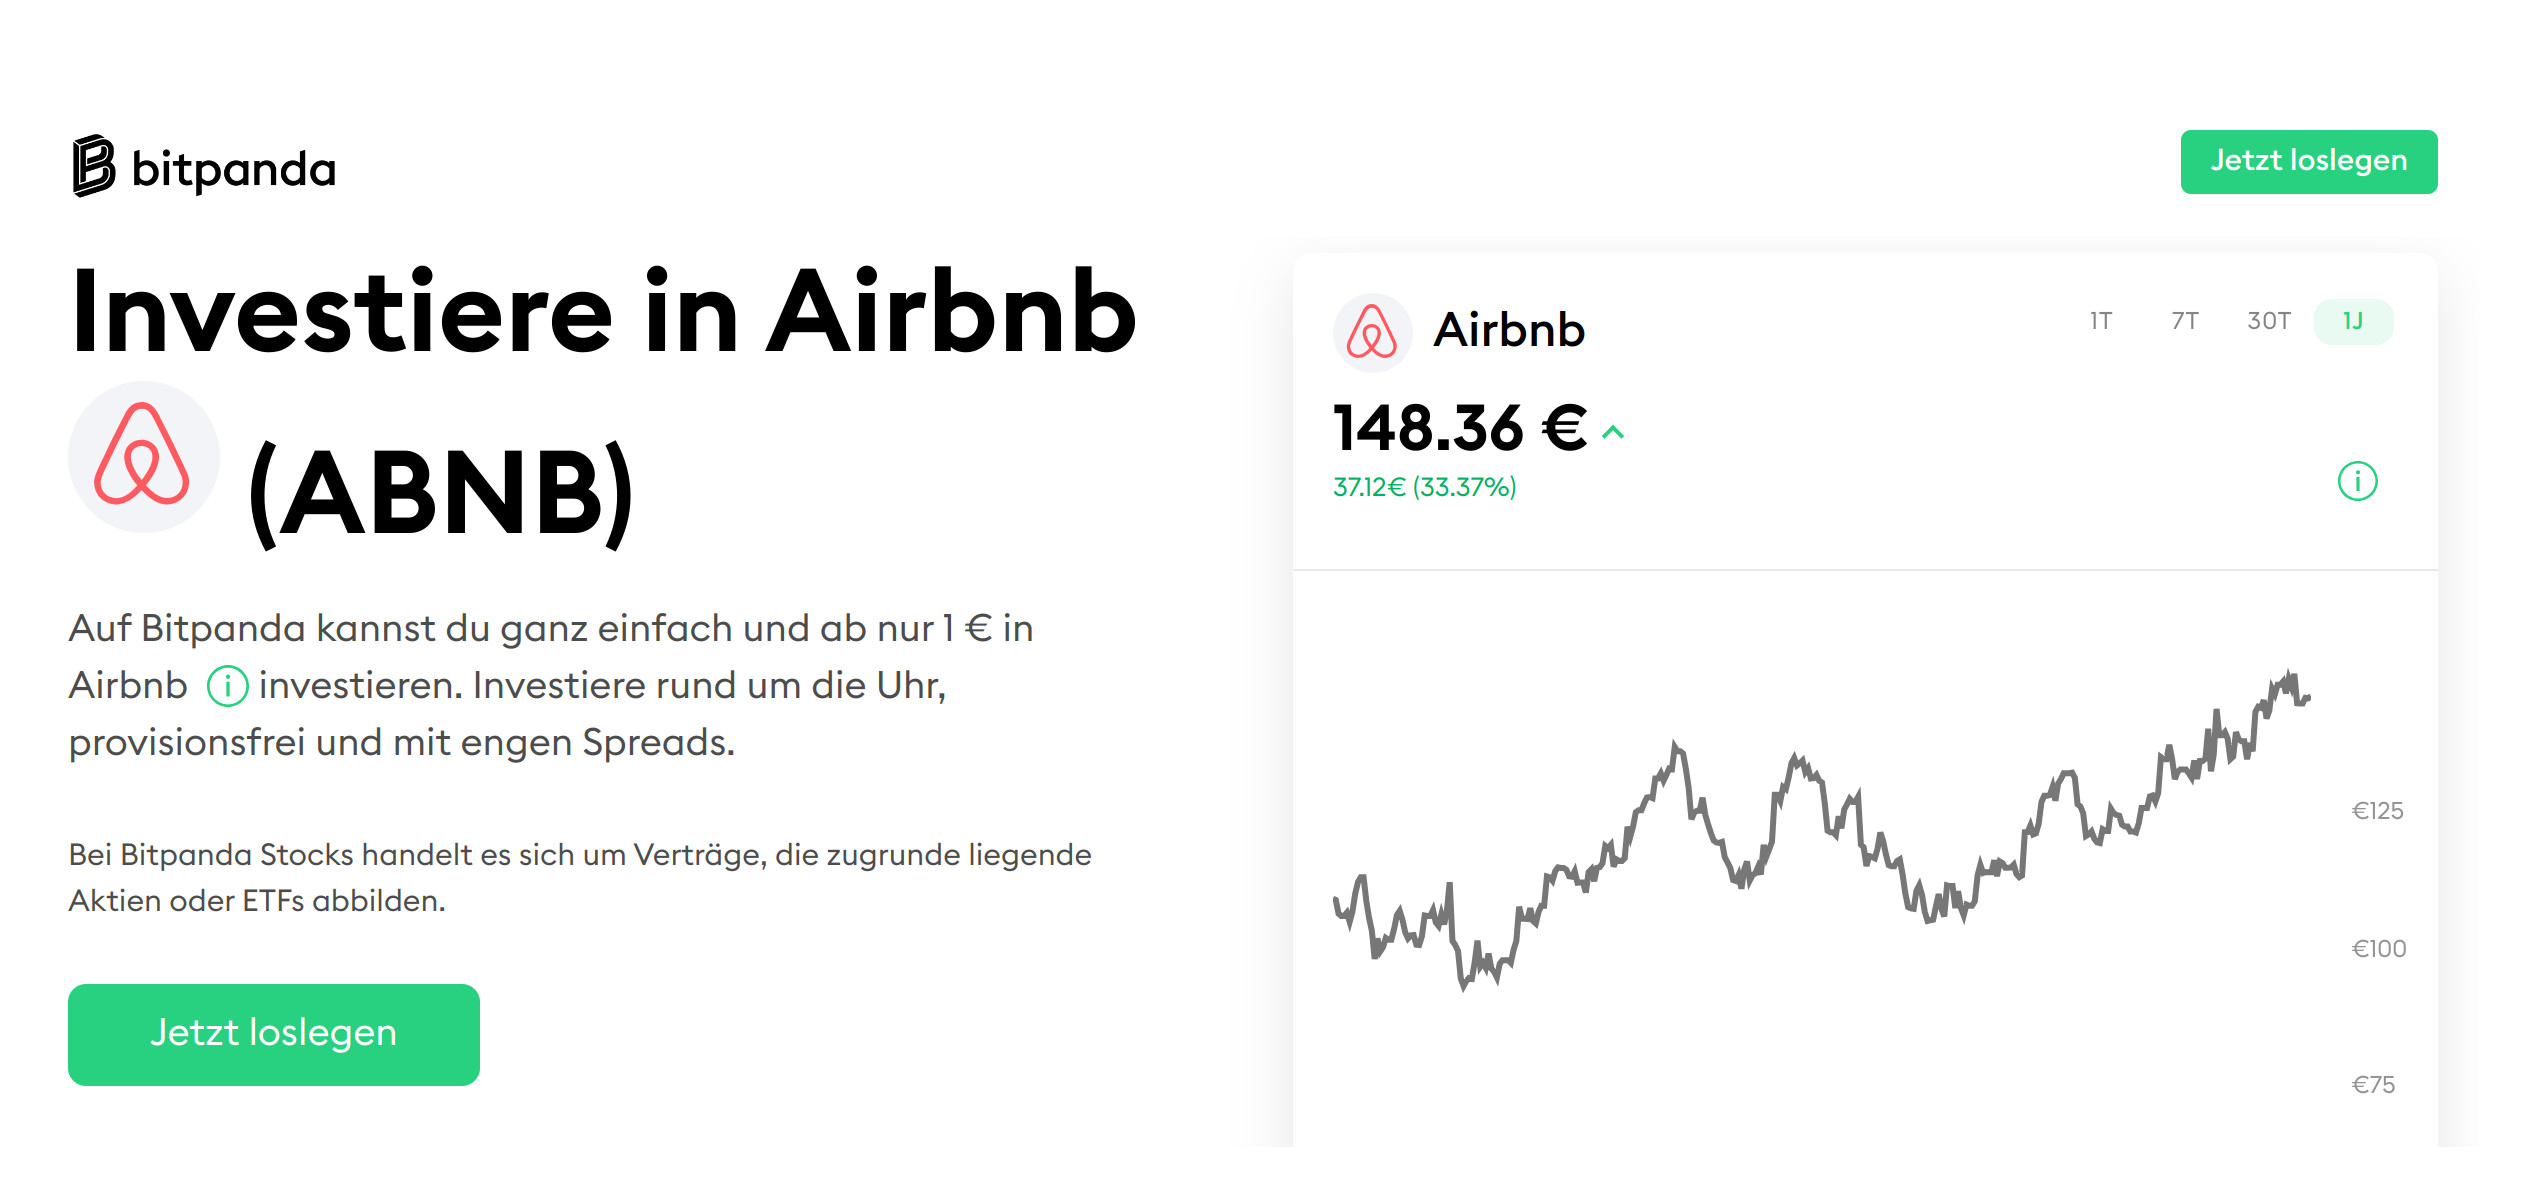 Warum die AirBnB-Aktie ein Kauf sein könnte